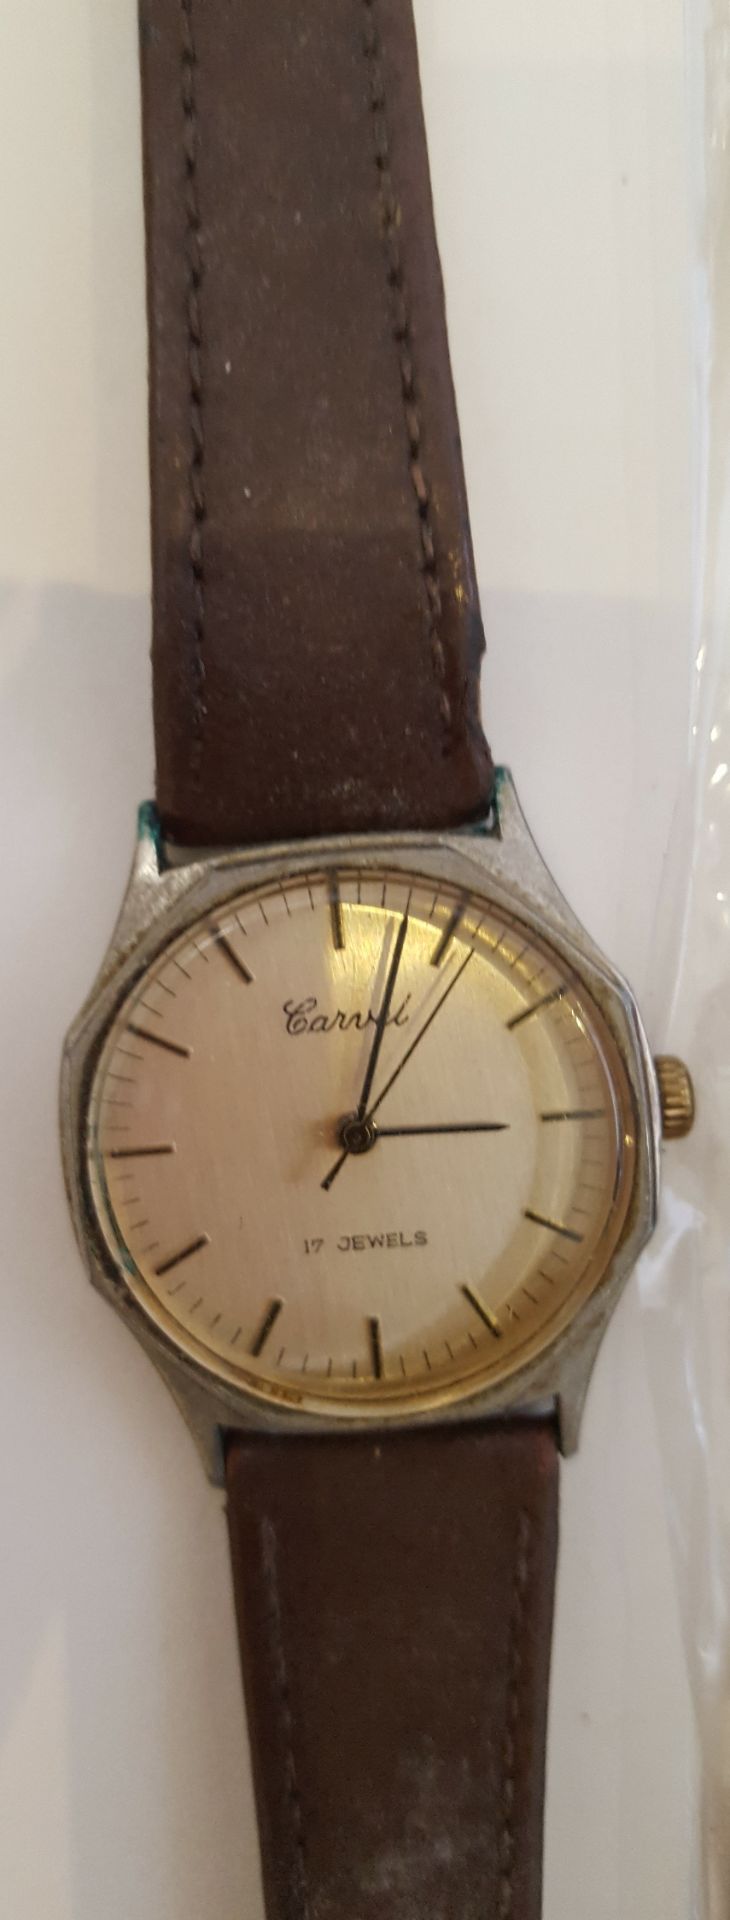 Vintage Wrist Watches 1 x Carvel 17 Jewels 3 x Eiger & 1 x Limit - Bild 2 aus 4